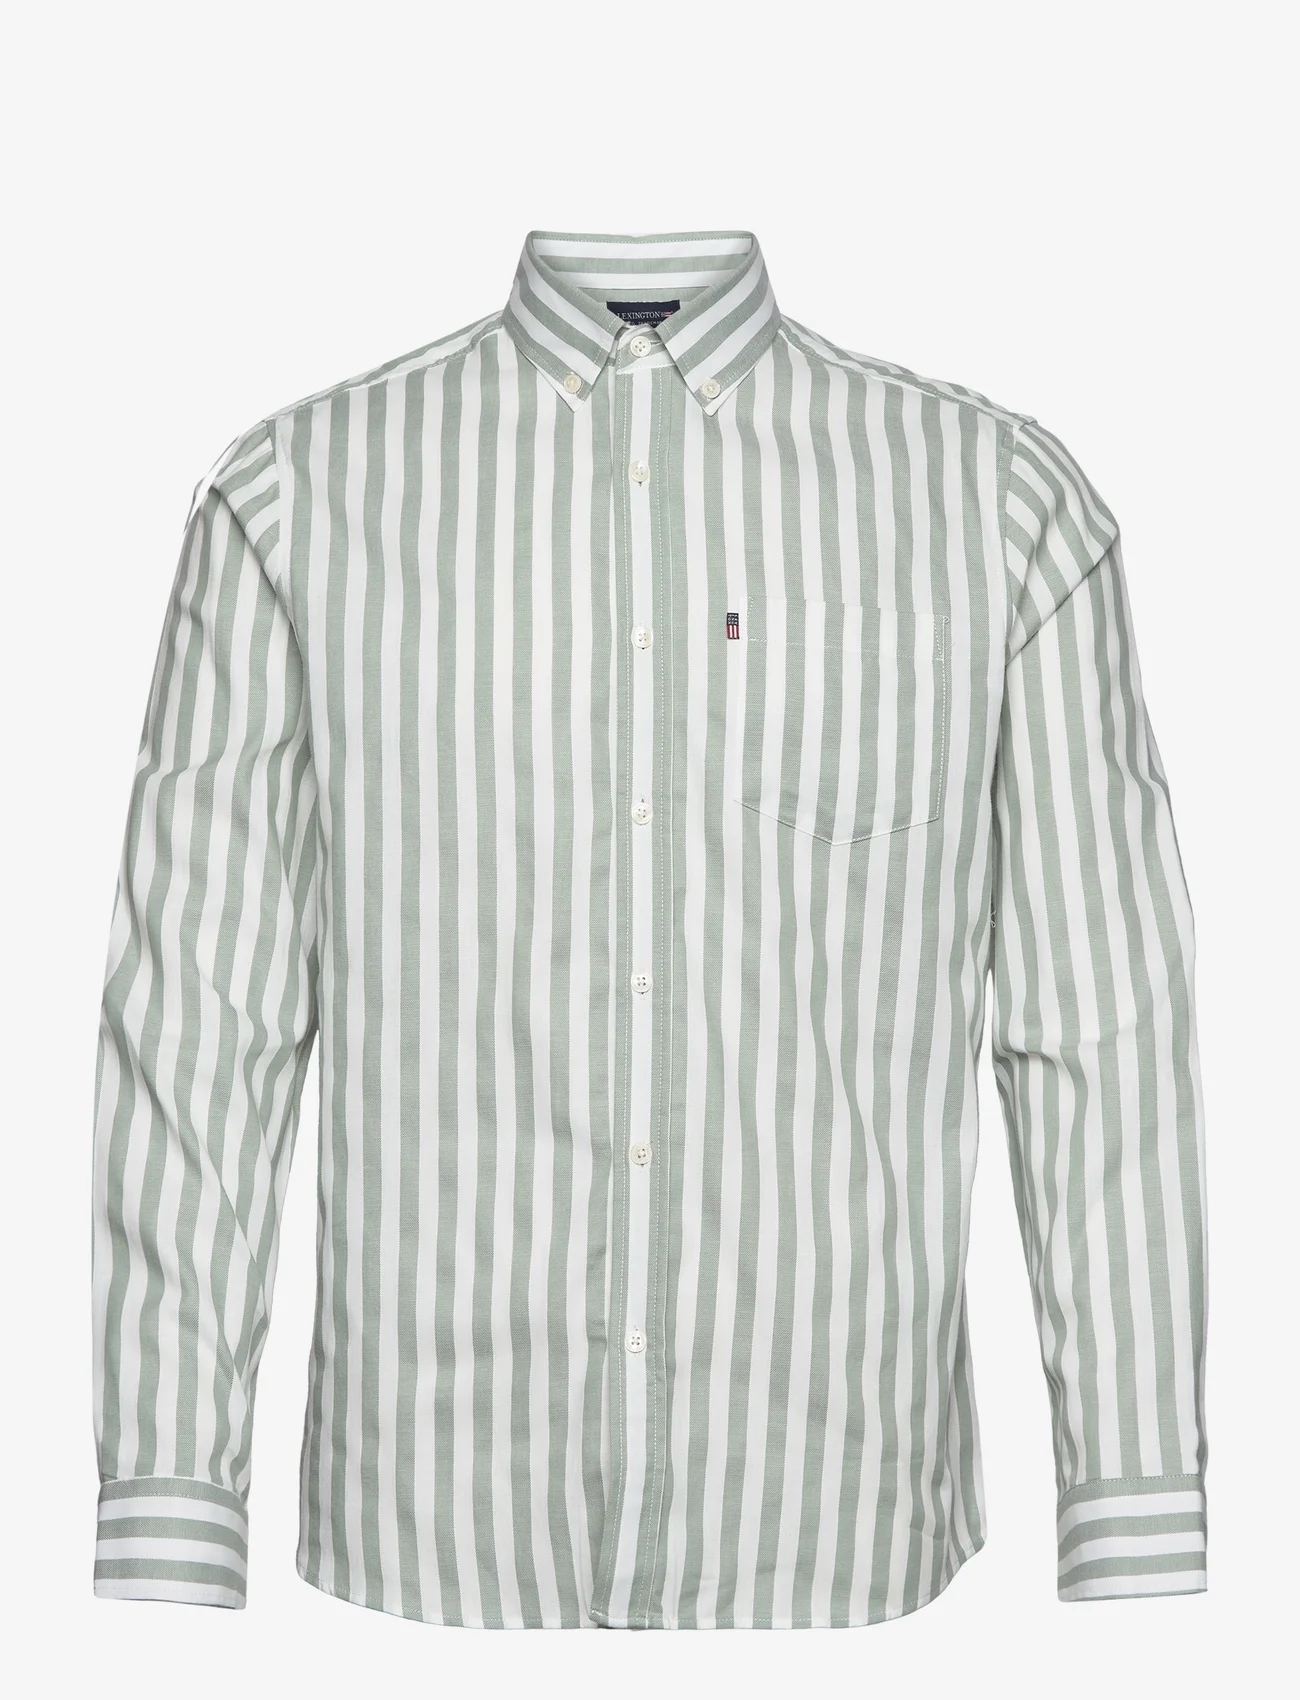 Lexington Clothing - Fred Striped Shirt - avslappede skjorter - green/white stripe - 0